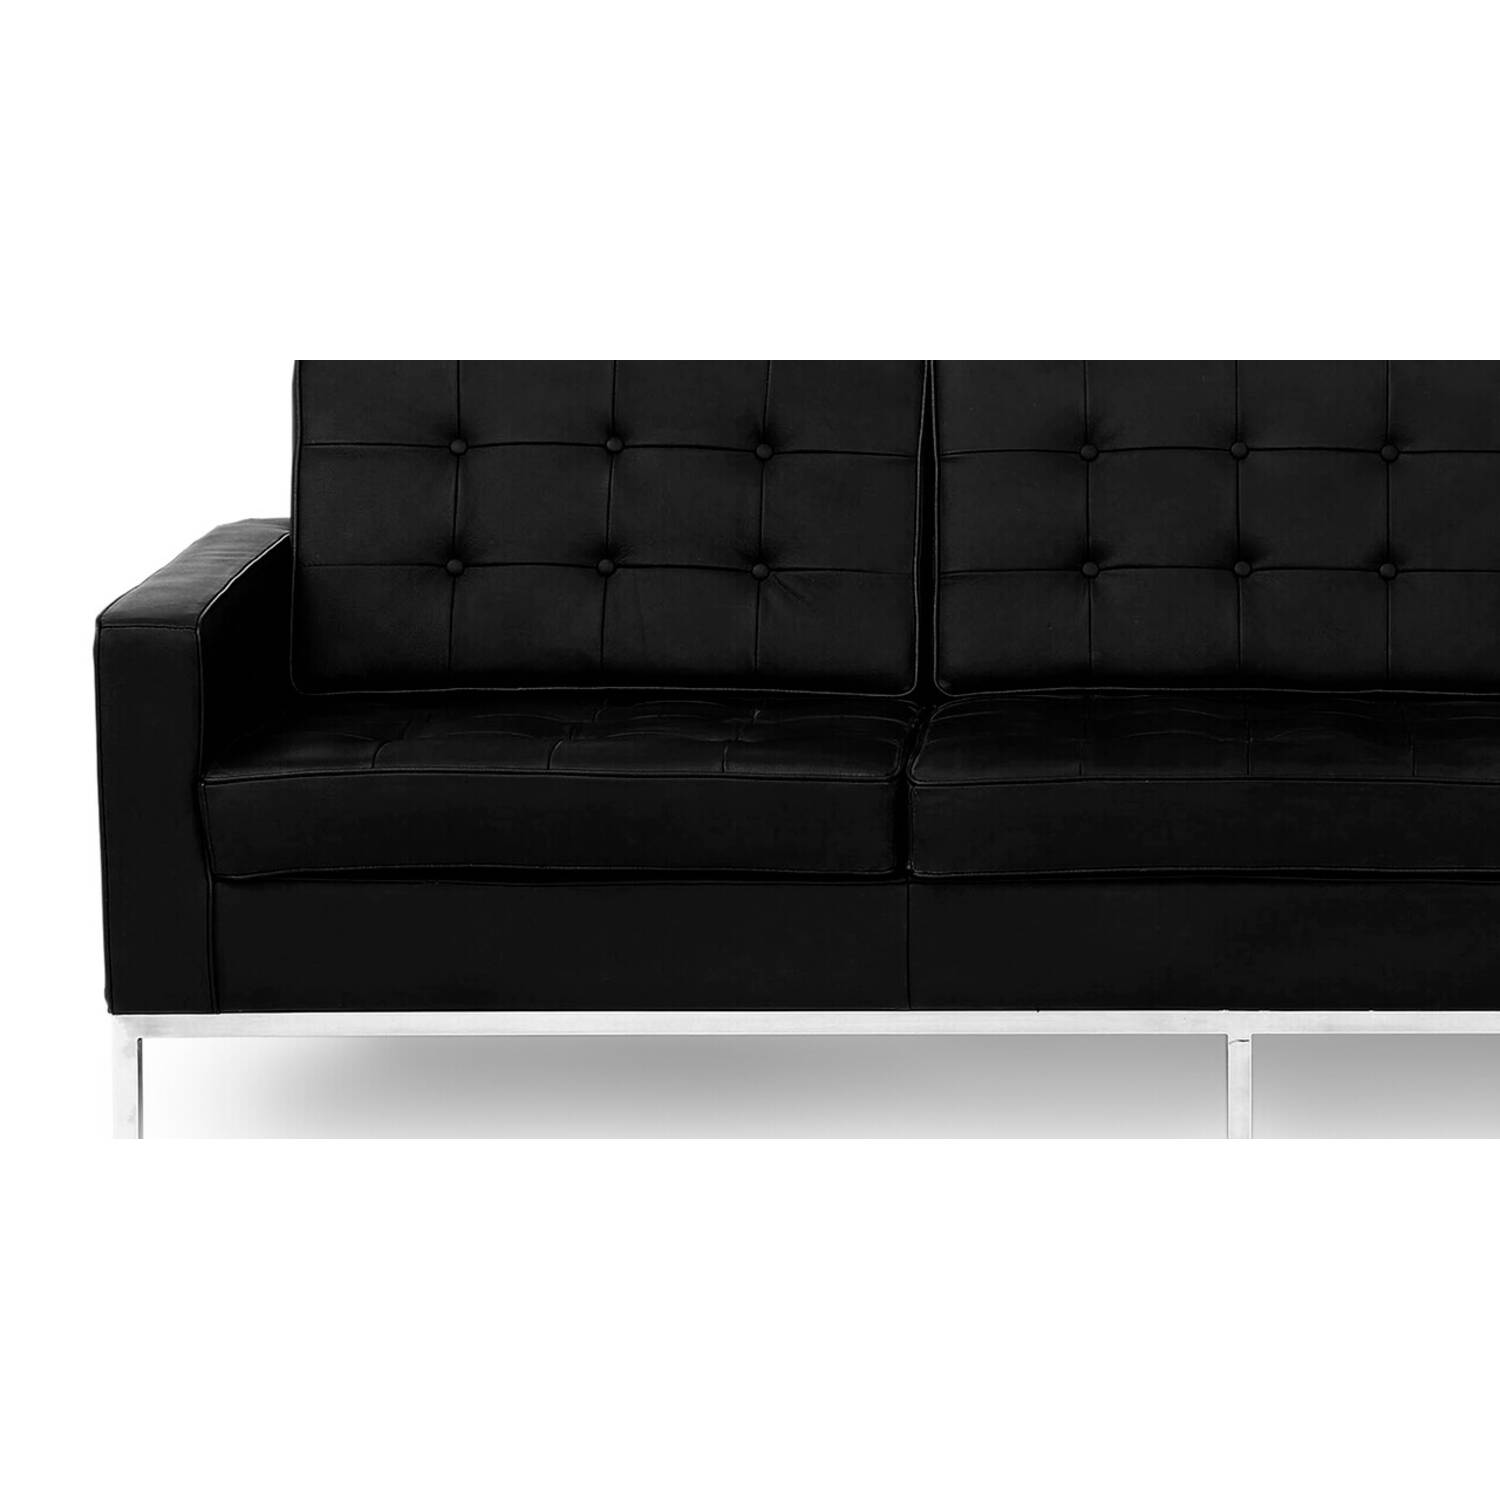 Черный кожаный трехместный диван Florence, экокожа